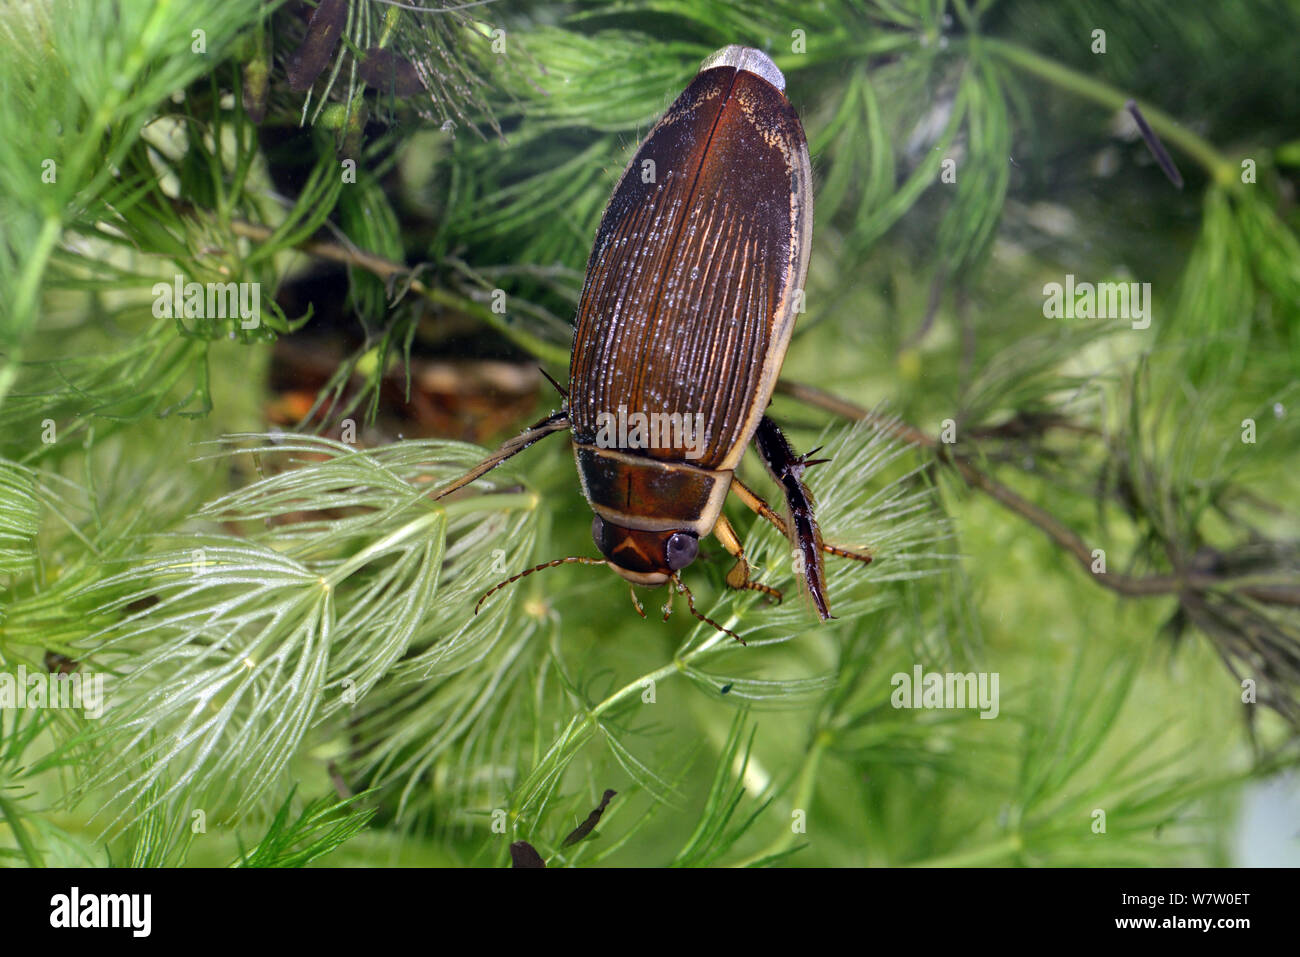 Buceo fantástico escarabajo femenino (Dytiscus circumflexus), descansando sobre Hornwort, cautiva, Reino Unido. Foto de stock